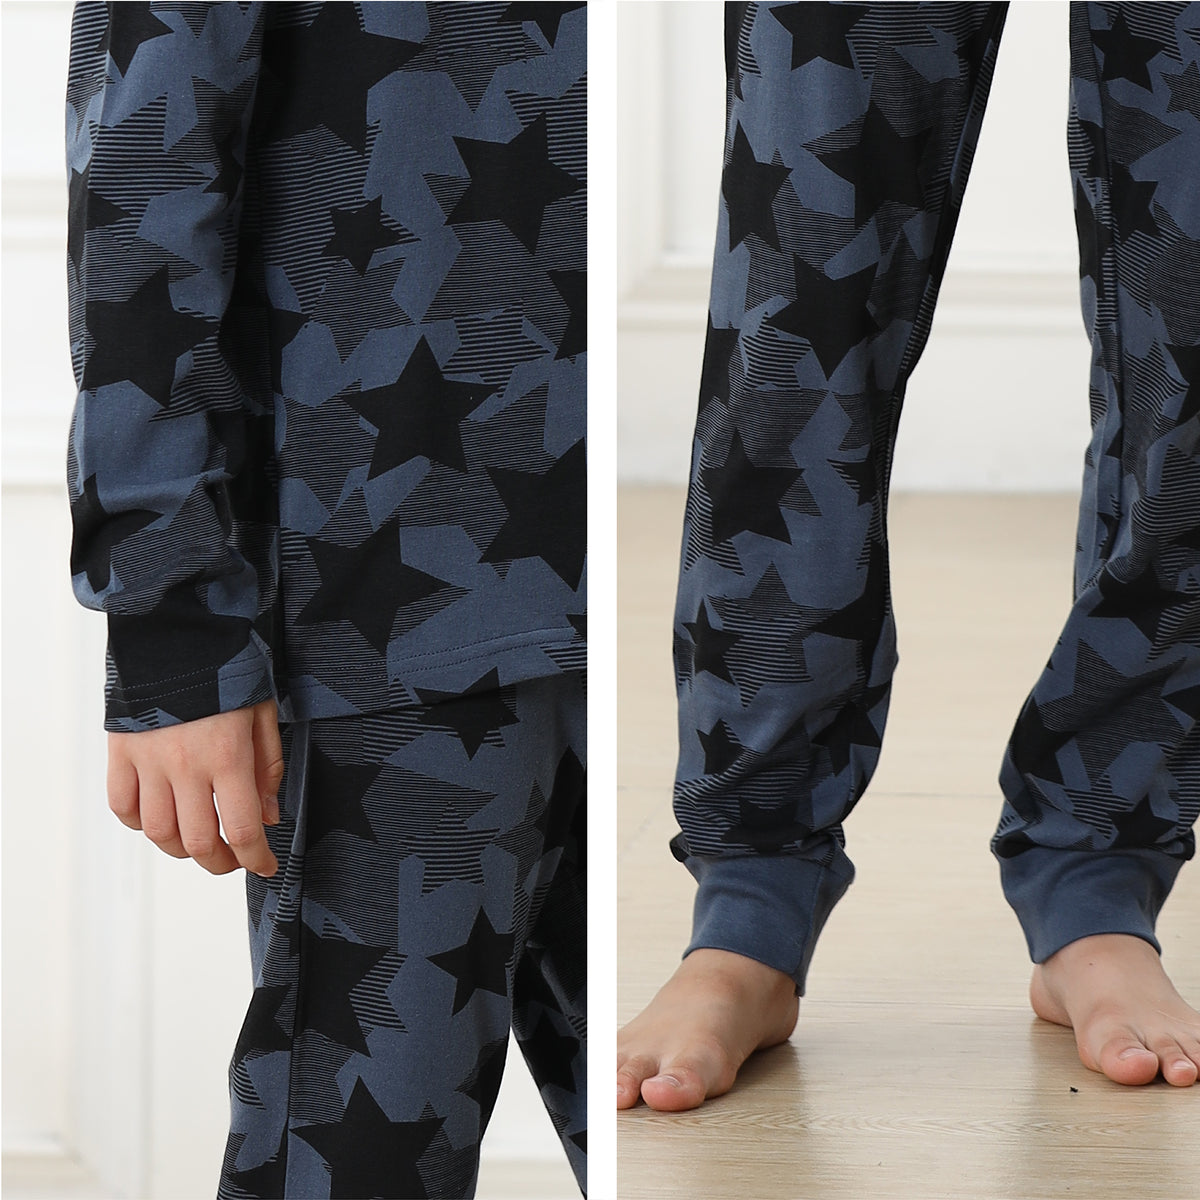 Boys Long Sleeve Stars  Pyjamas